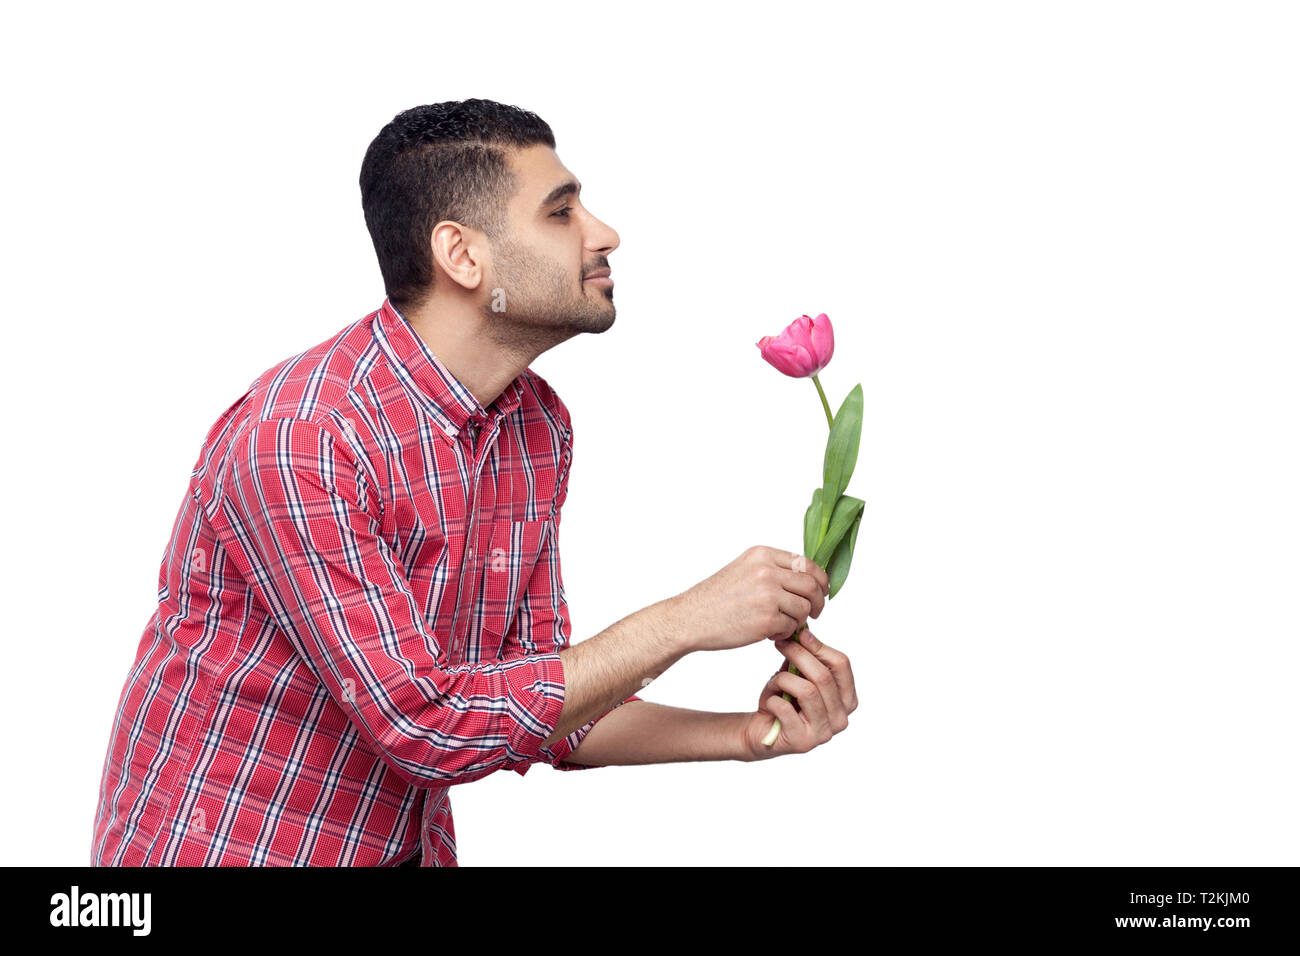 Seite Profil ansehen Portrait von Stattlichen bärtiger junger Mann in rot kariertem Hemd und eine Tulpe Blume Holding und lächelnd und gerade auf der Suche Stockfoto